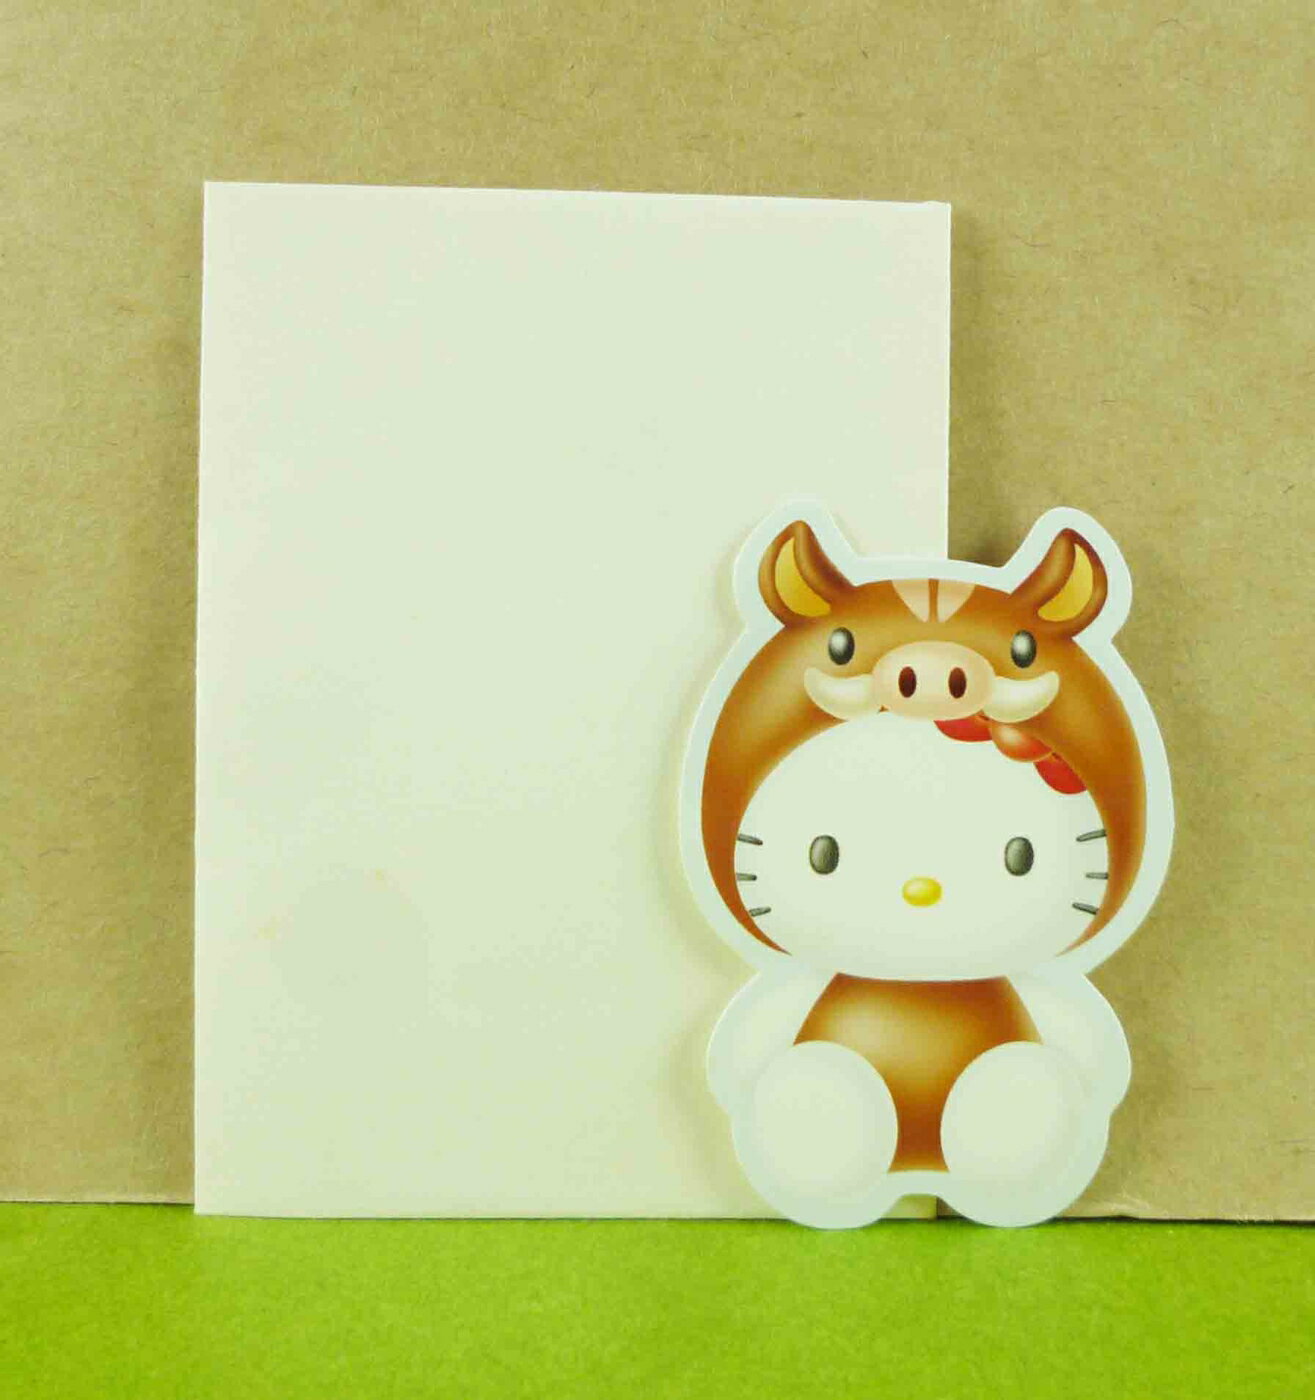 【震撼精品百貨】Hello Kitty 凱蒂貓 生肖卡片-豬 震撼日式精品百貨